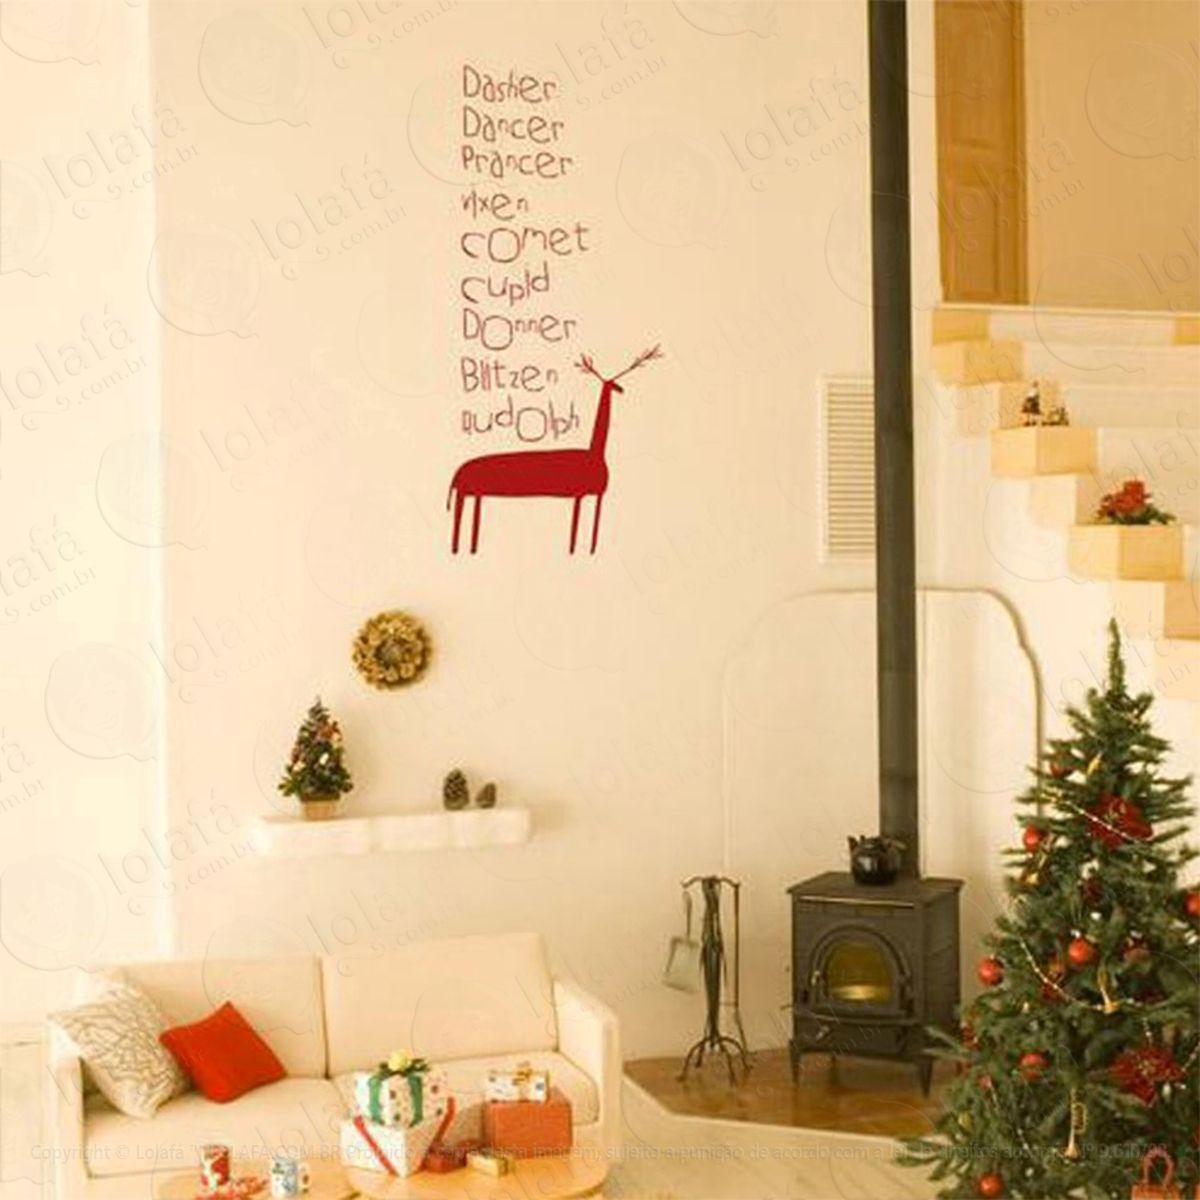 rena frase adesivo de natal para vitrine, parede, porta de vidro - decoração natalina mod:221